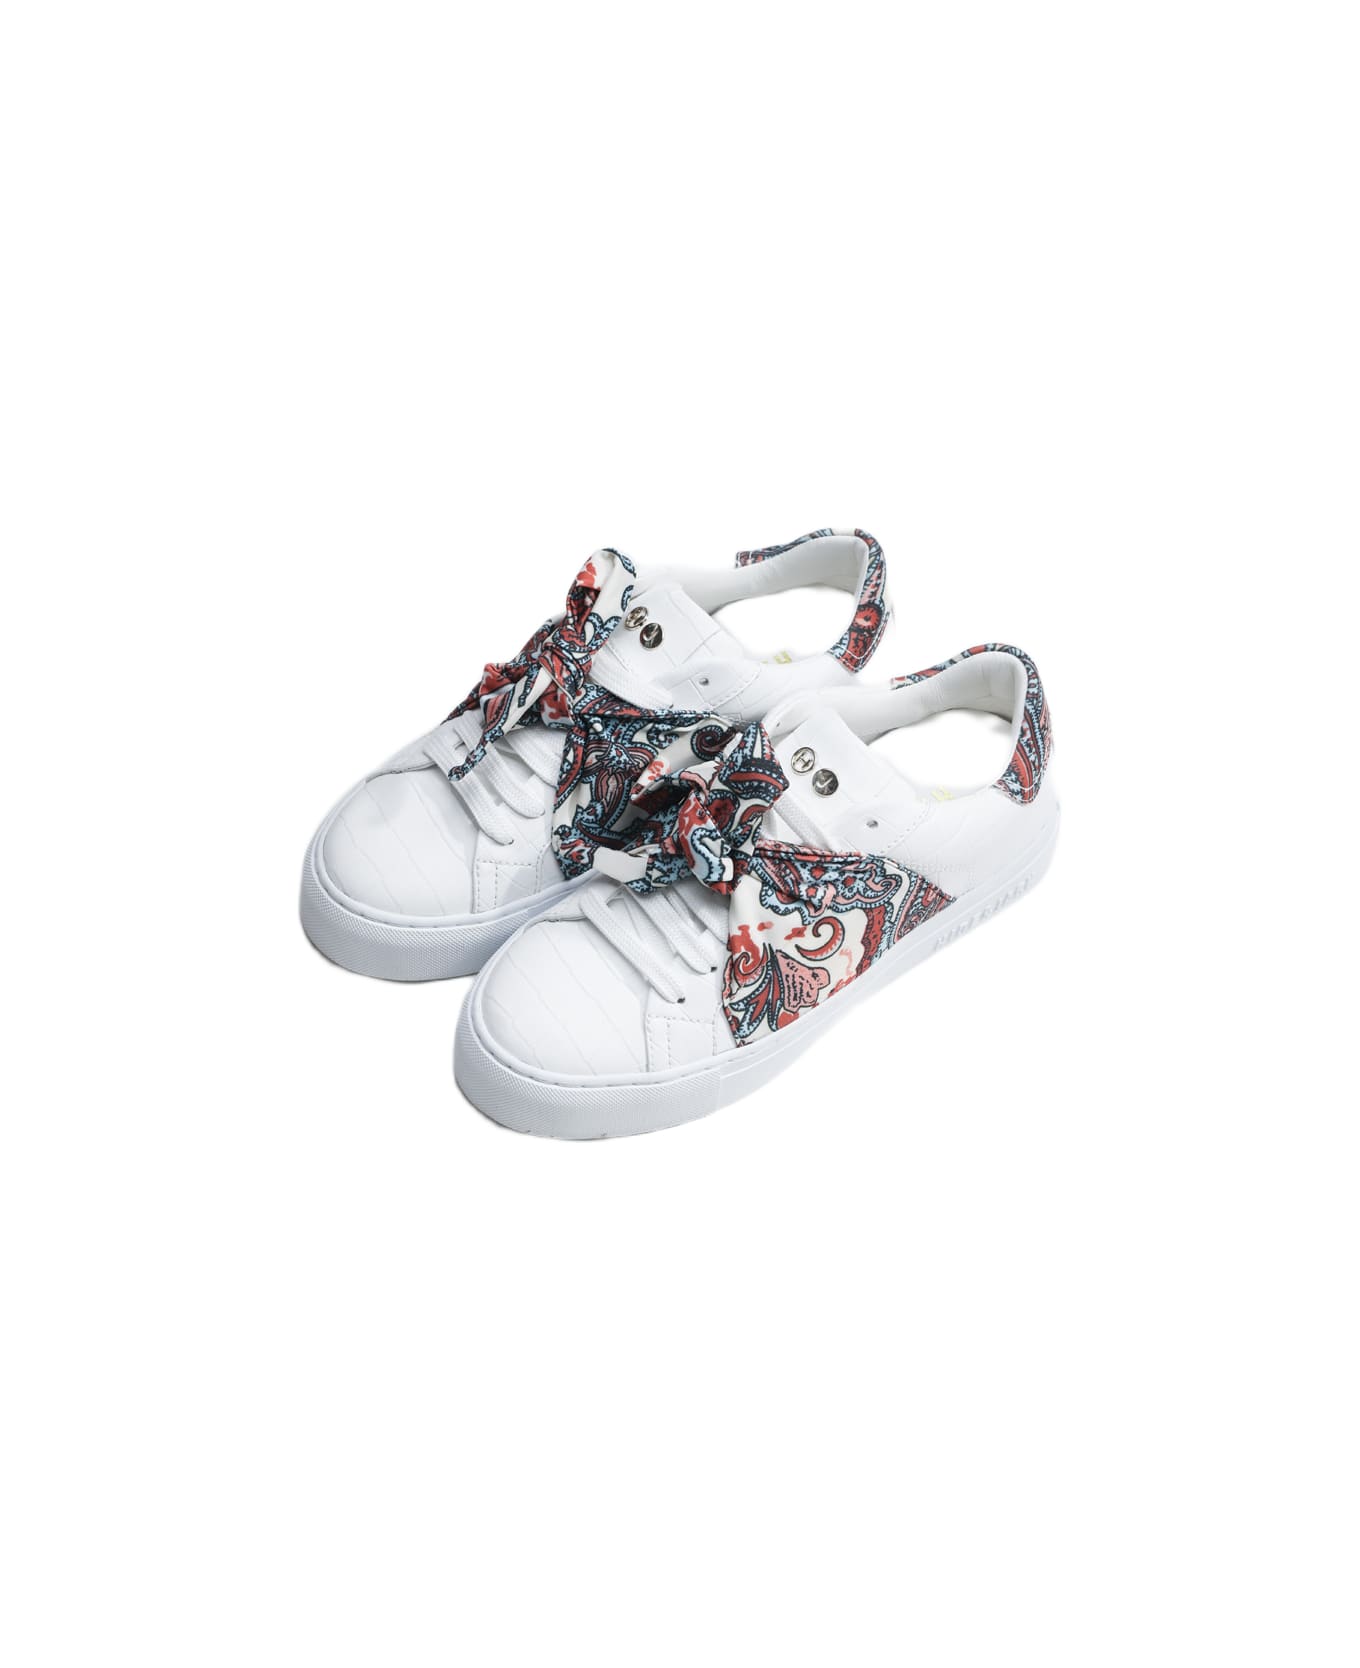 Hide&Jack Low Top Sneaker - Essence Foulard White スニーカー